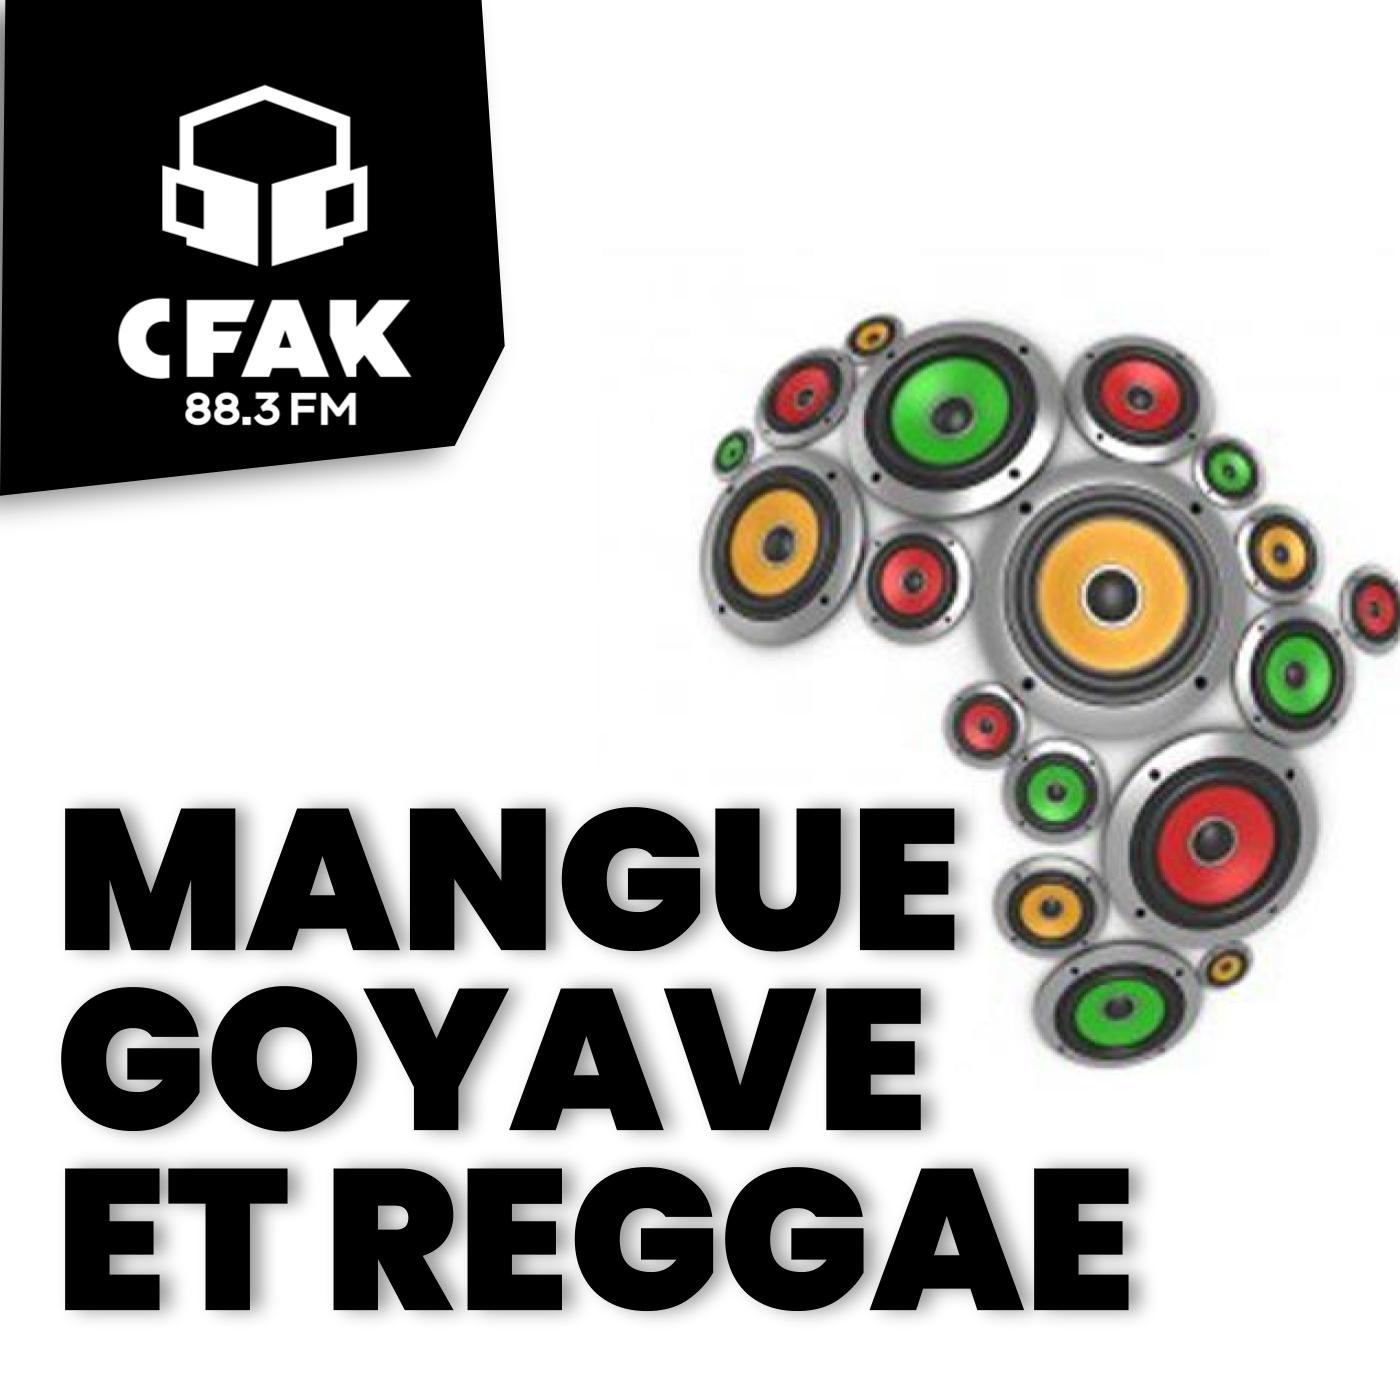 Mangue, Goyave et Reggae - 27 août 2021